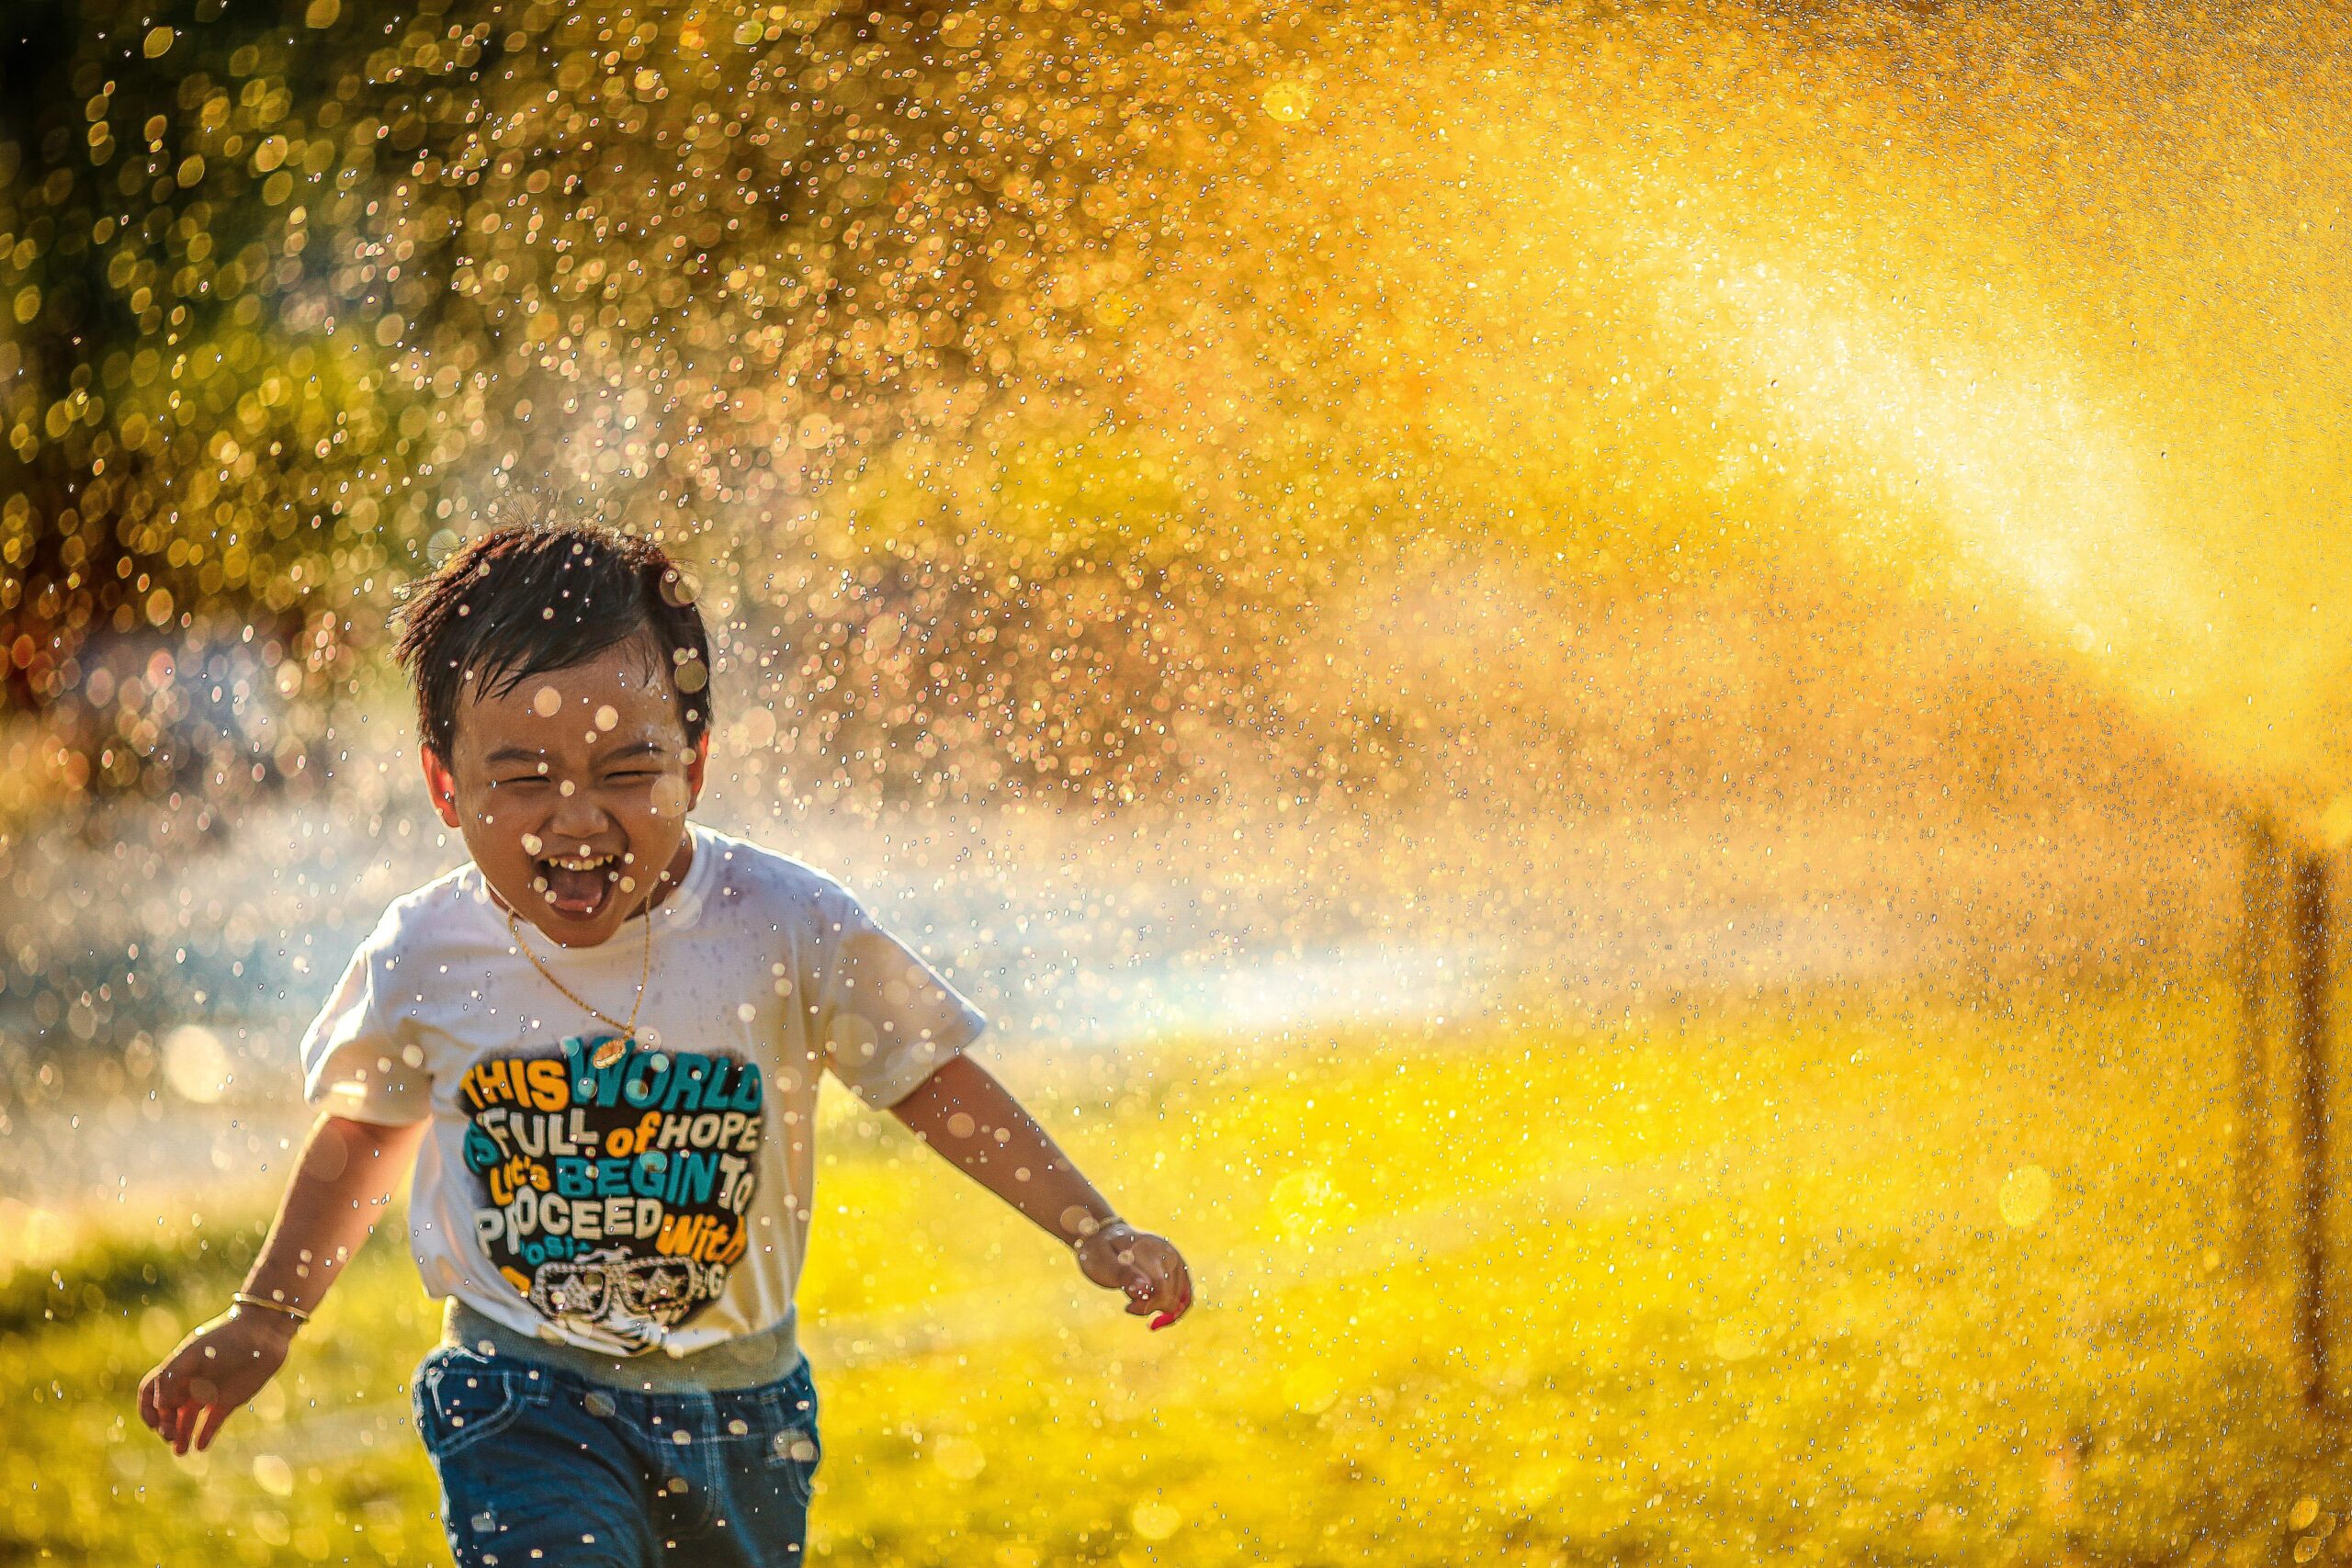 Endlich Sommer: ein kleiner Junge läuft lachend unter einem Wassersprenger hindurch